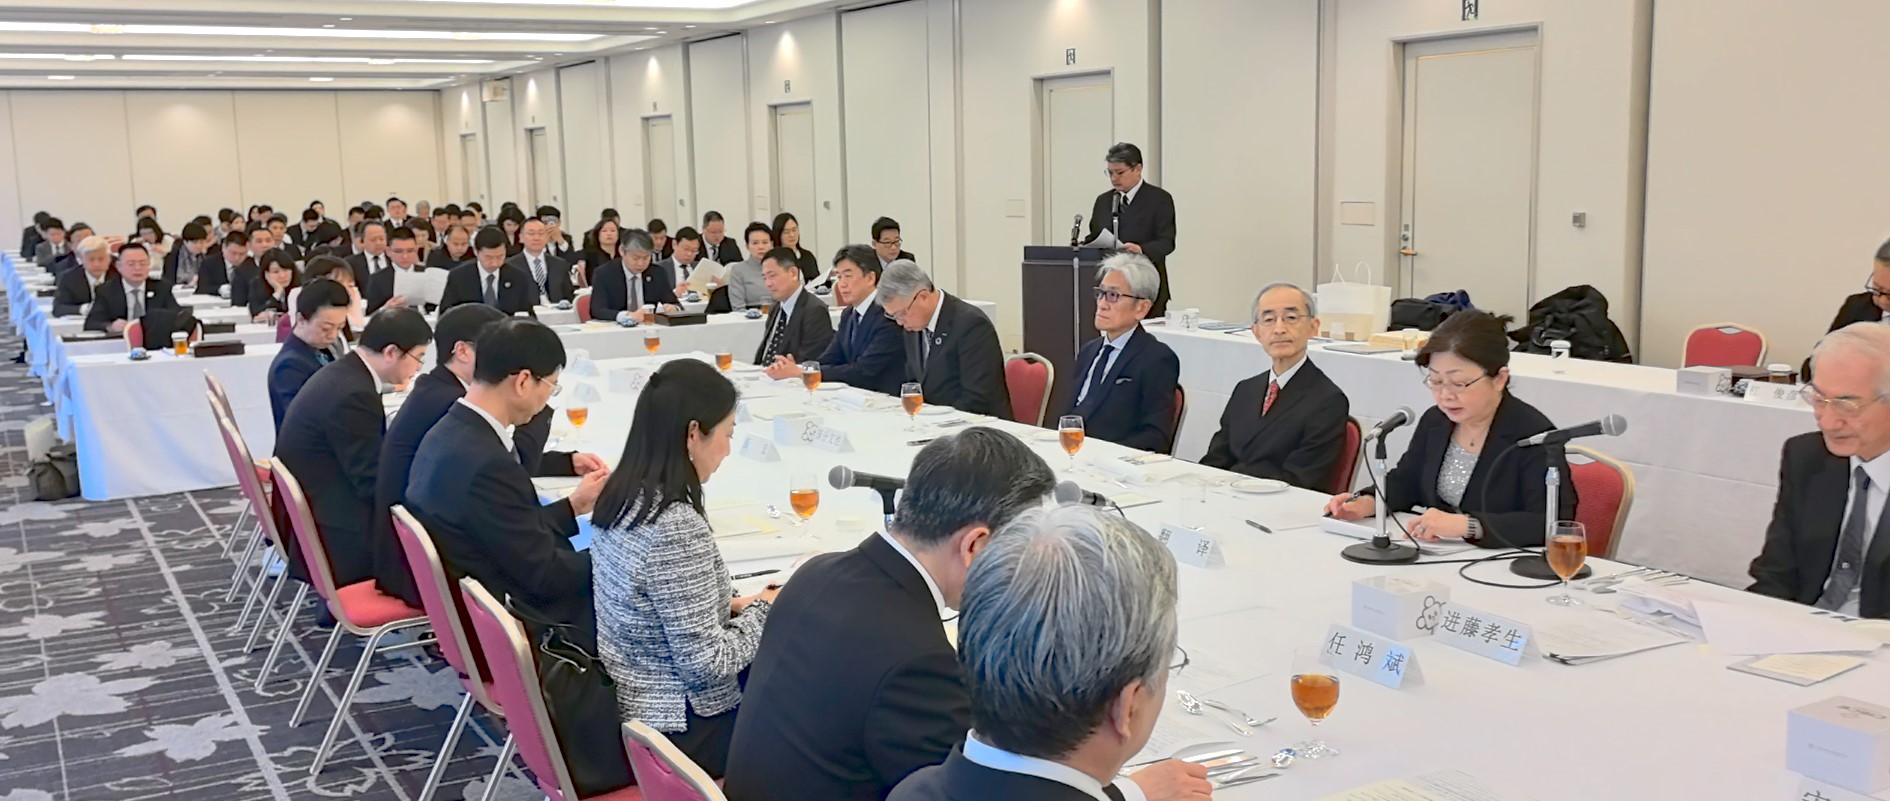 5日に東京で開催された中国国際貿易促進会と日中経済協会による中日経済界対話（主催者提供）